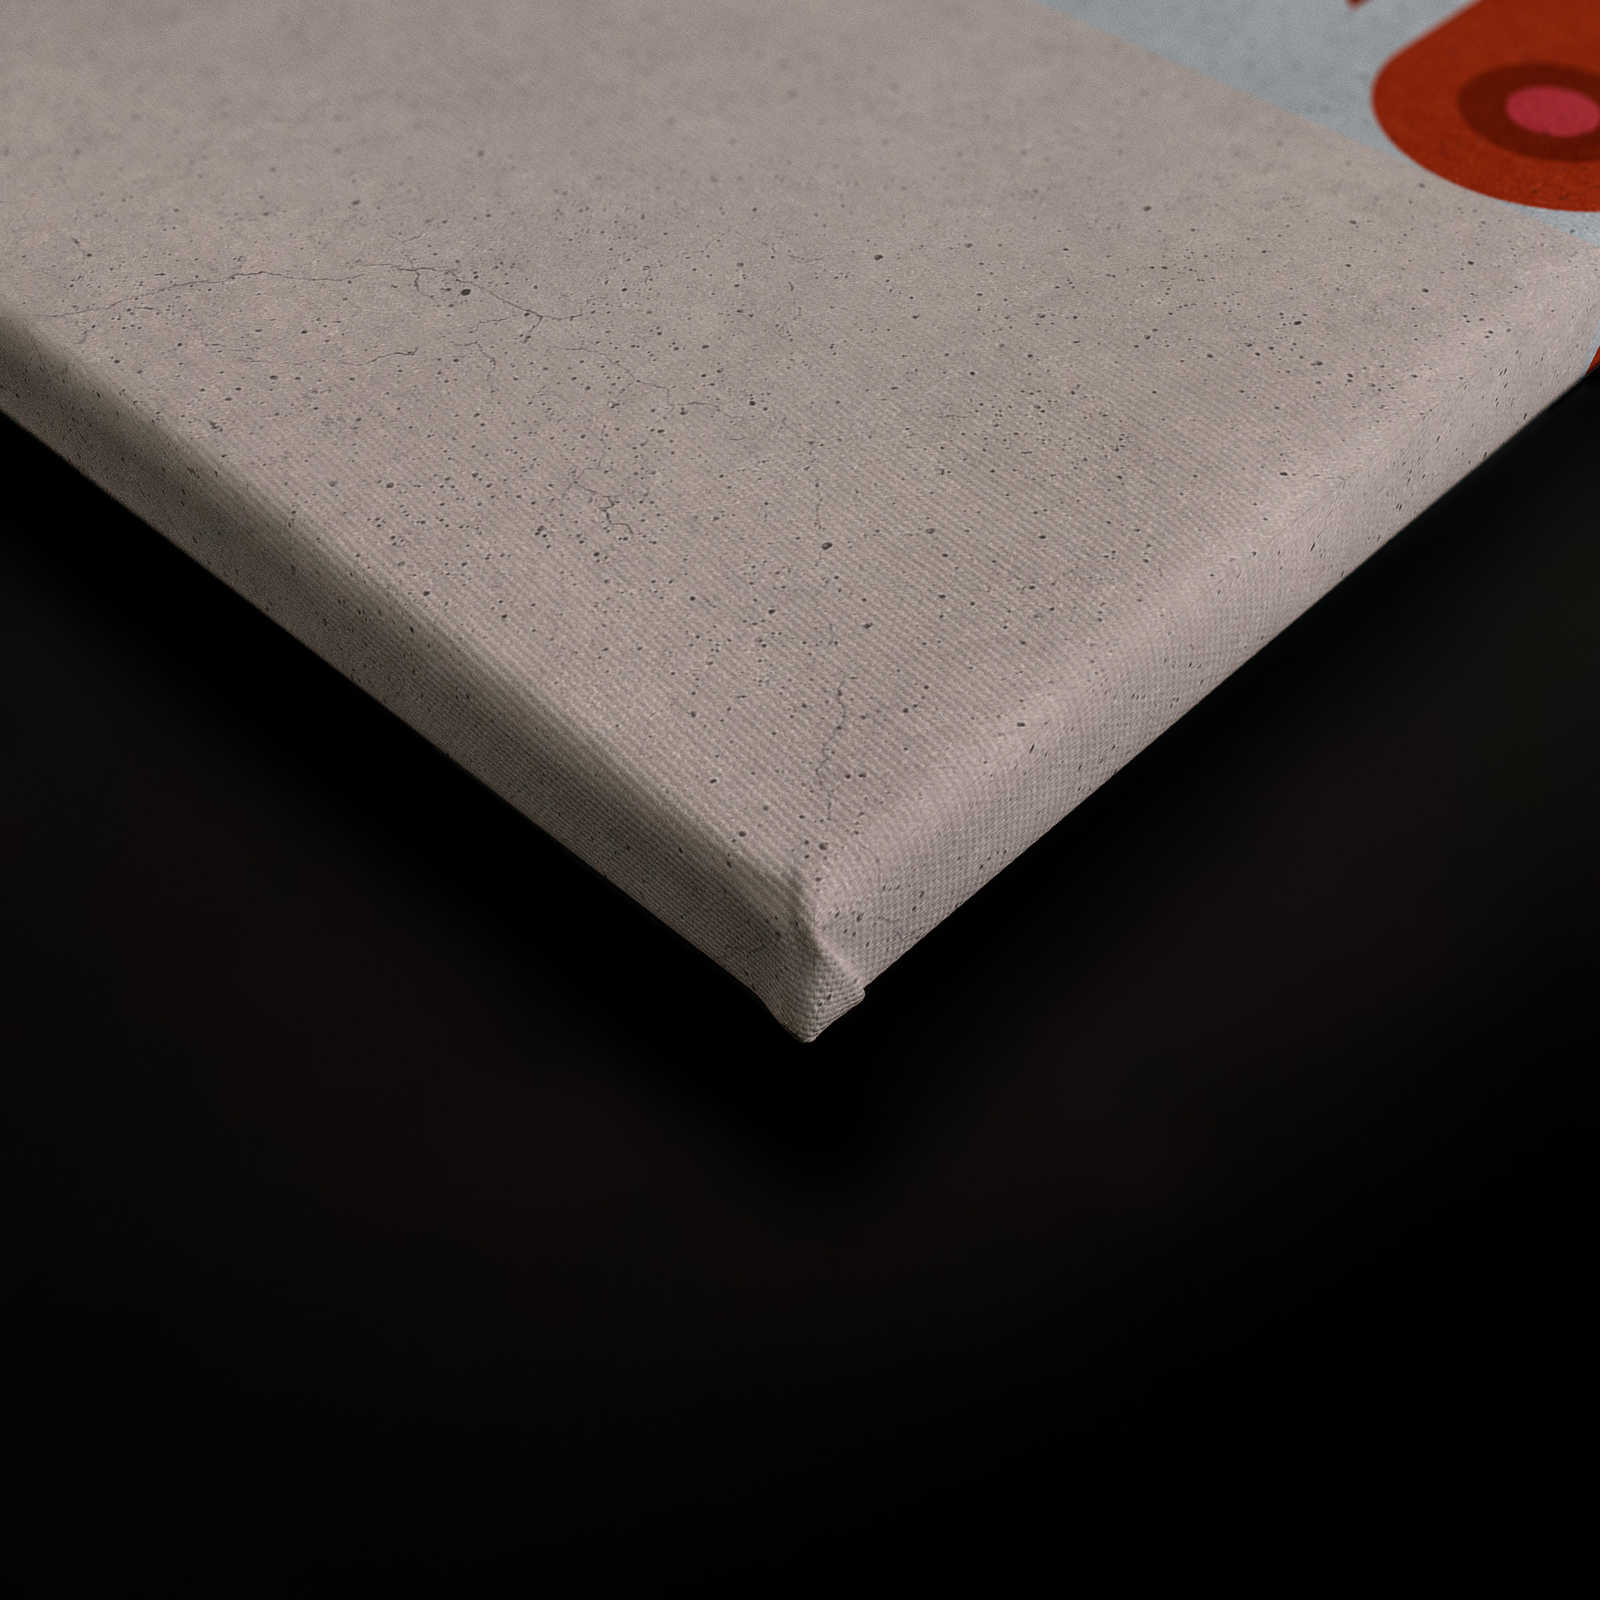             Coppie 3 - Quadro su tela Pop Art di coppie in struttura di cemento - 0,90 m x 0,60 m
        